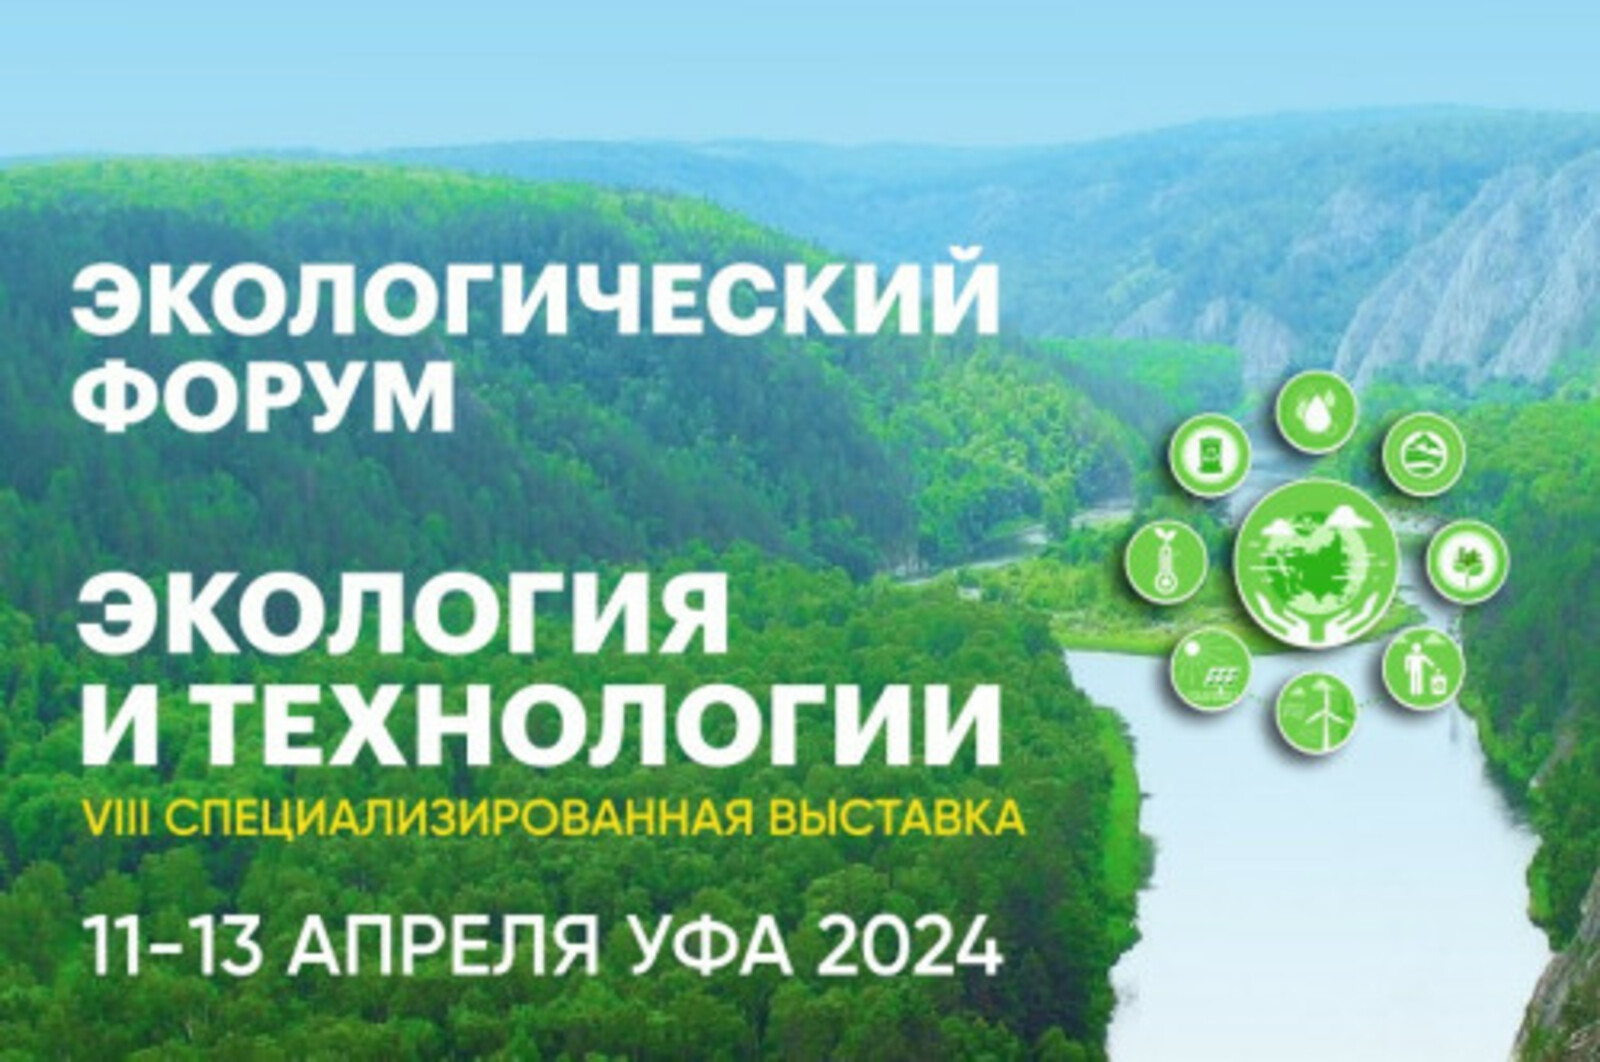 В экологическом форуме в Уфе примут участие представители из 17 регионов России, Казахстана и Республики Беларусь